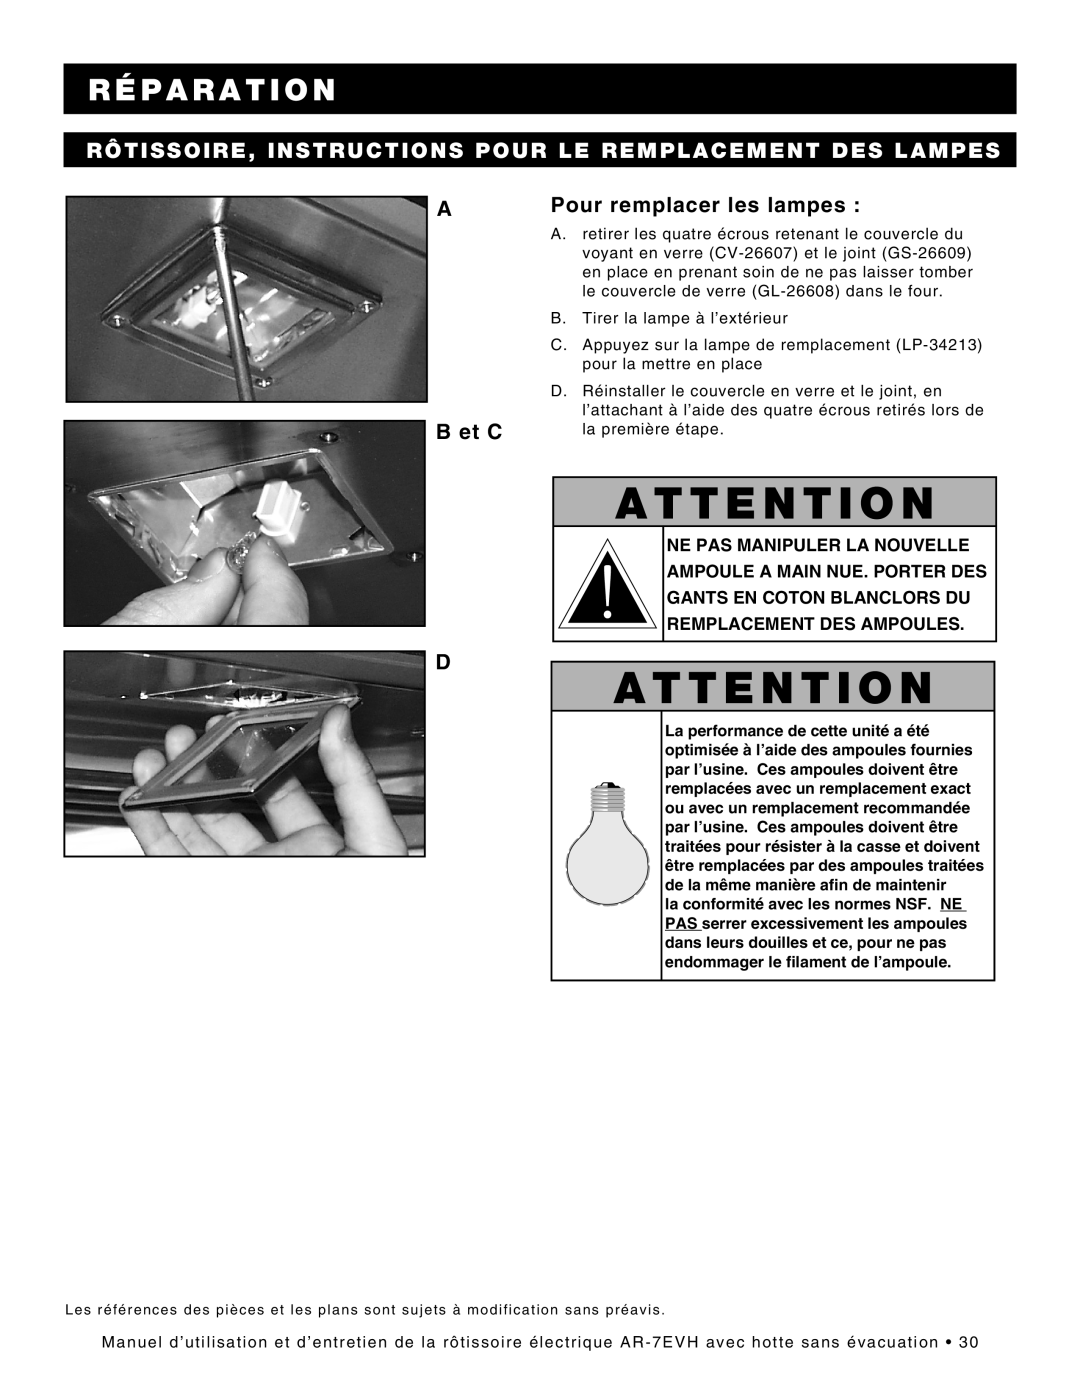 Alto-Shaam ar-7evh manual Rôtissoire, Instructions Pour Le Remplacement Des Lampes, A B et C, Pour remplacer les lampes 